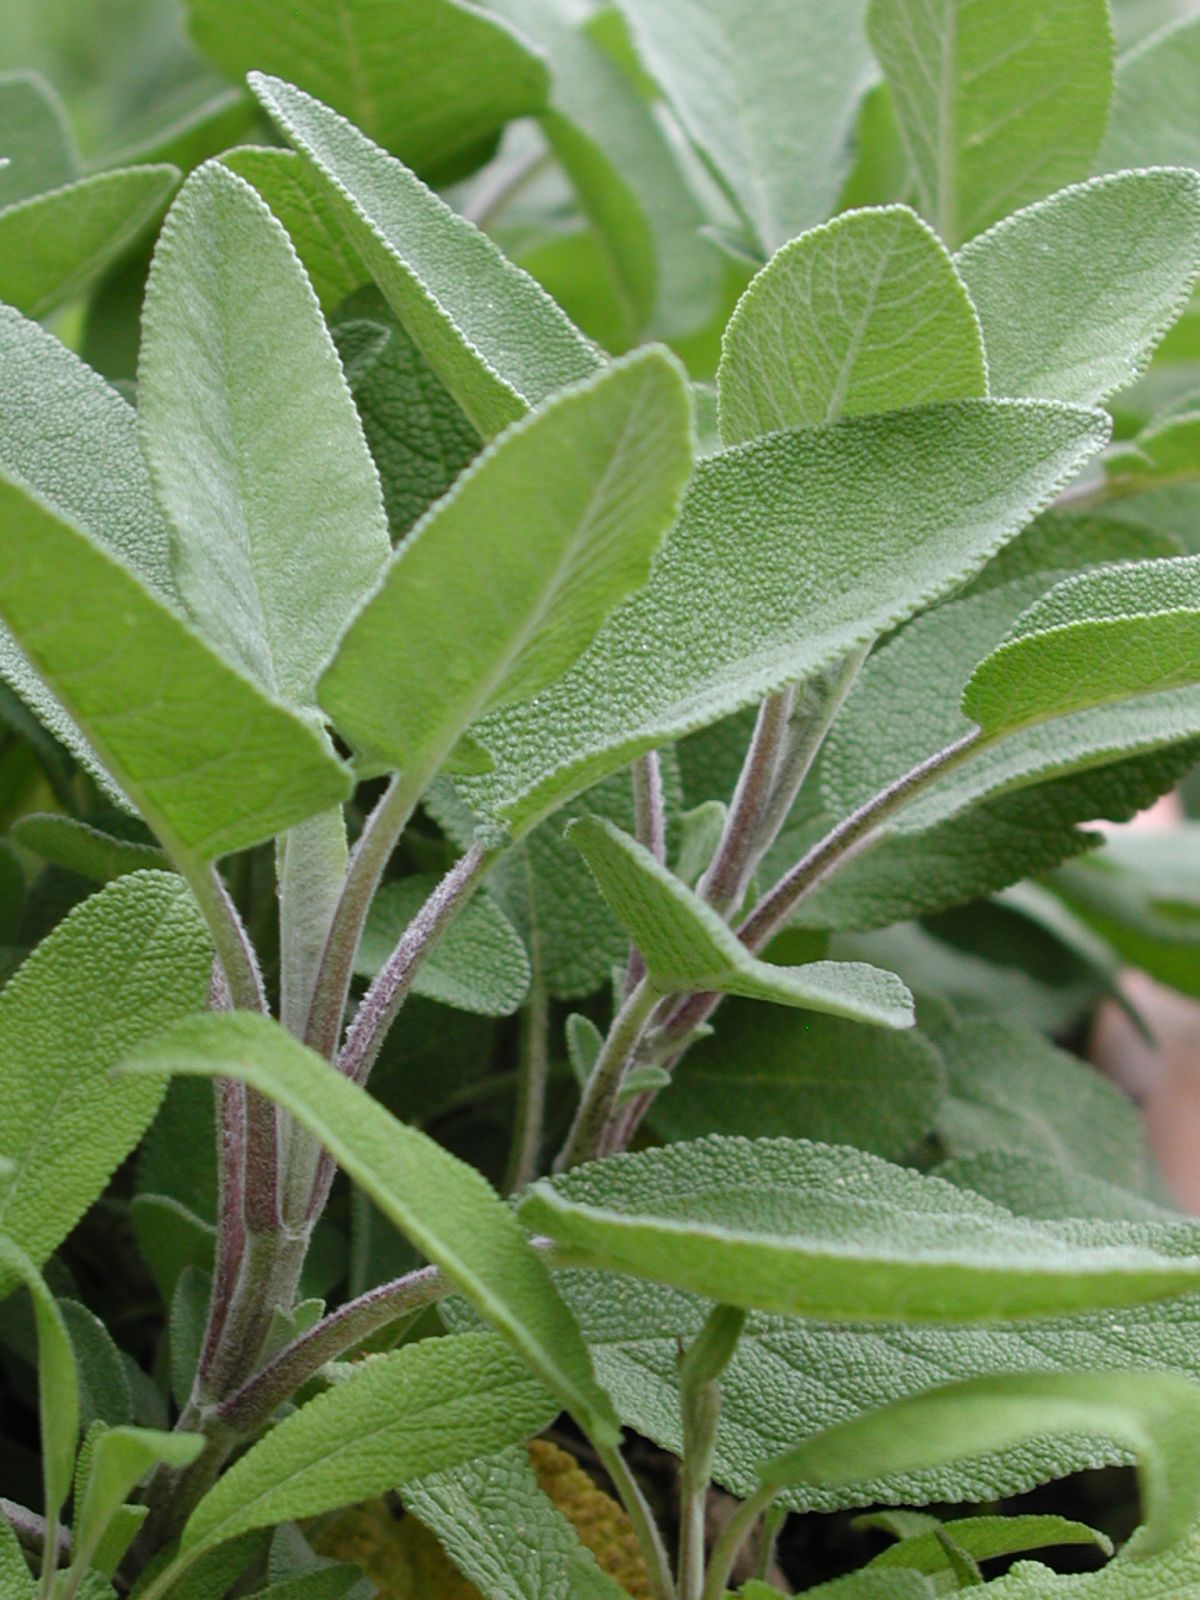 Salbei ist eine Heilpflanze, die aufgrund ihrer entzündungshemmenden Wirkung bei Halsschmerzen genutzt wird.